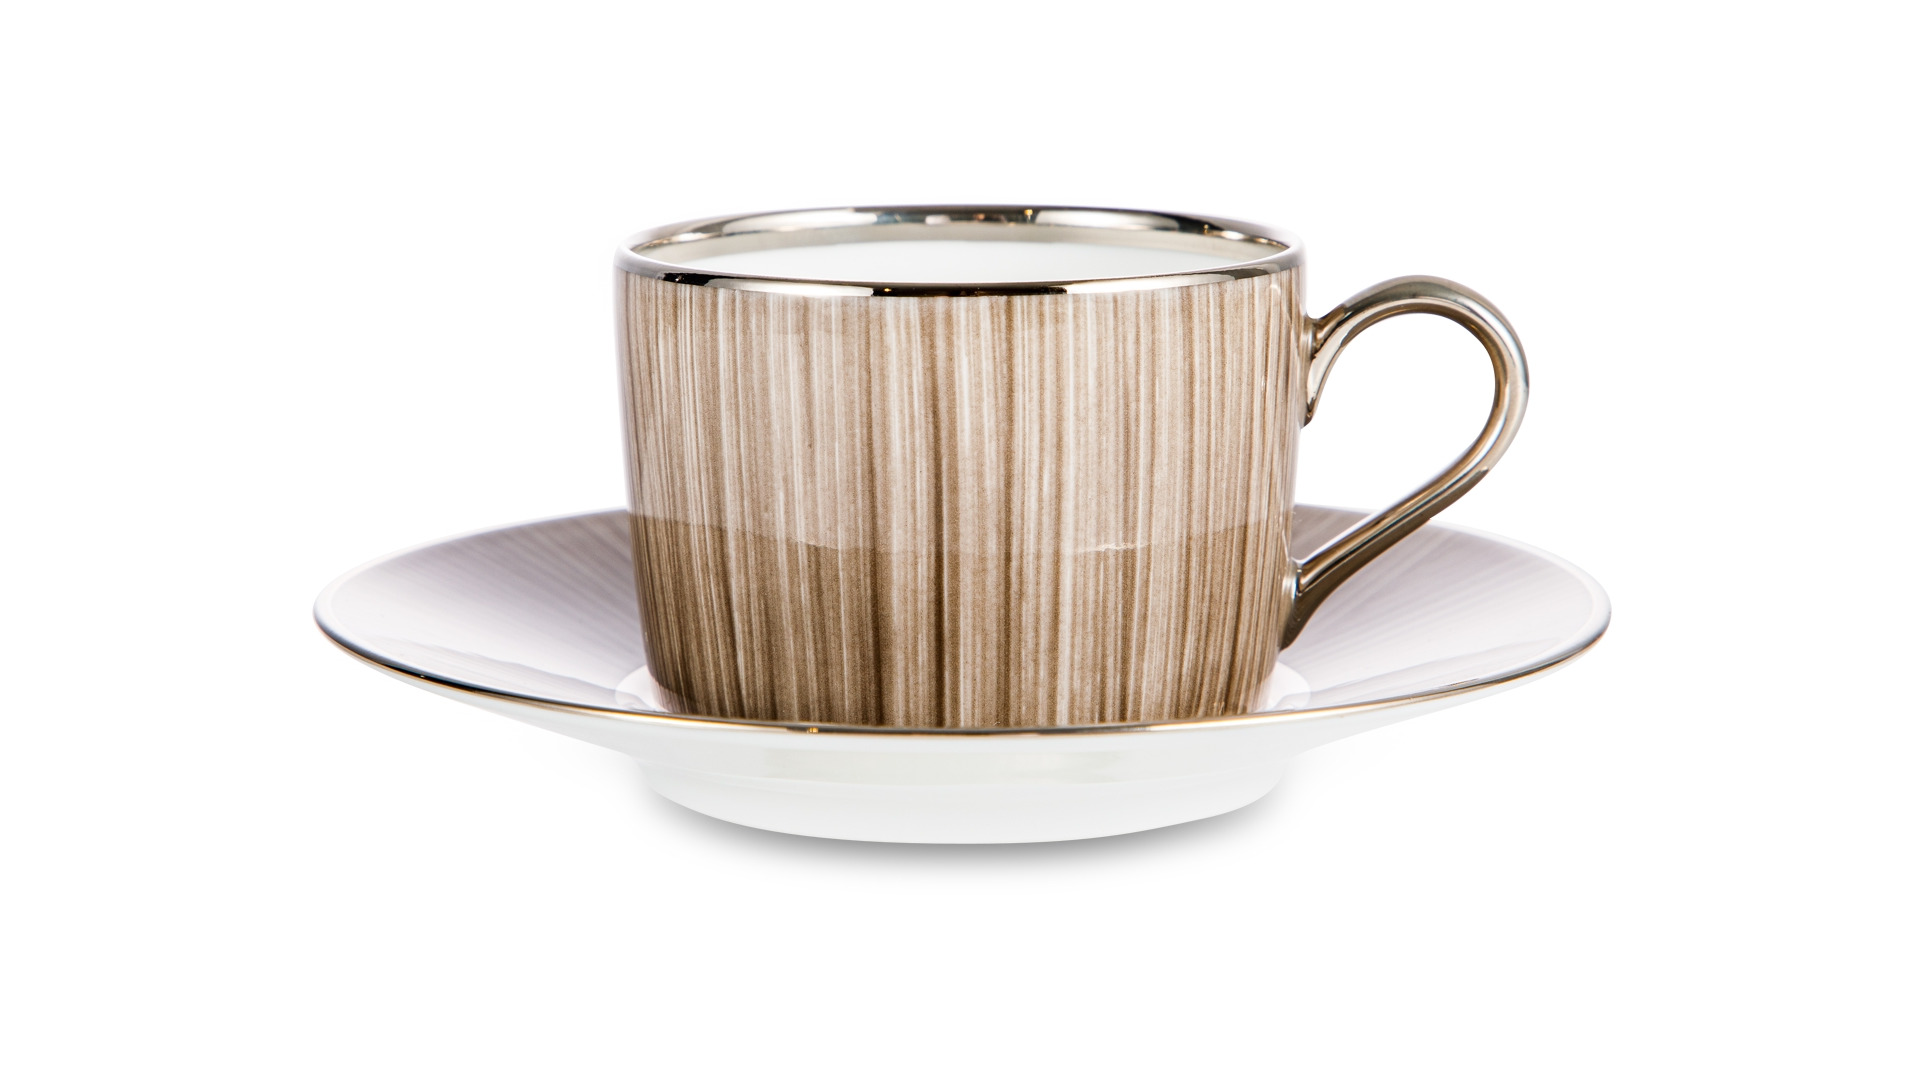 Чашка чайная с блюдцем Legle Карбон 150 мл, фарфор